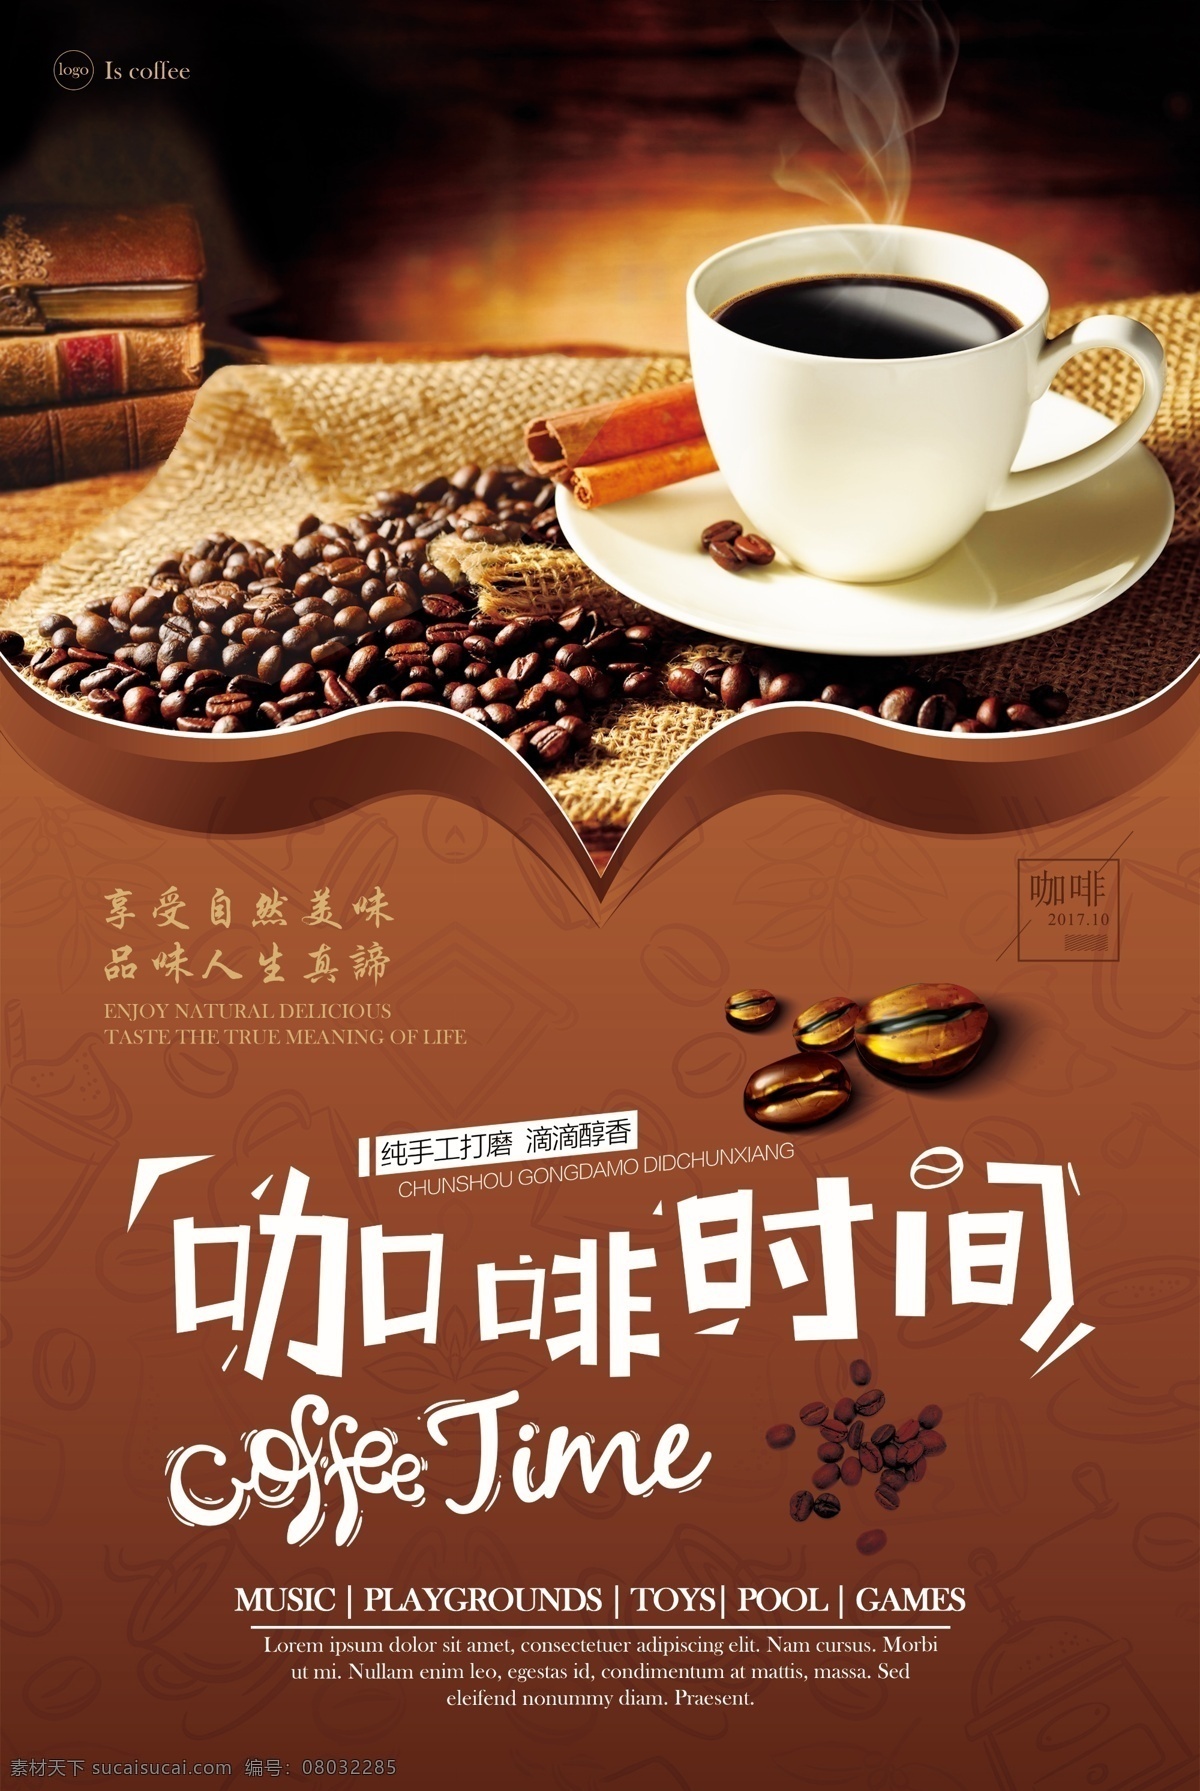 咖啡 新品上市 促销 海报 咖啡豆 咖啡店 咖啡海报 香浓咖啡 咖啡促销 慢时光 咖啡浪漫 免费模版